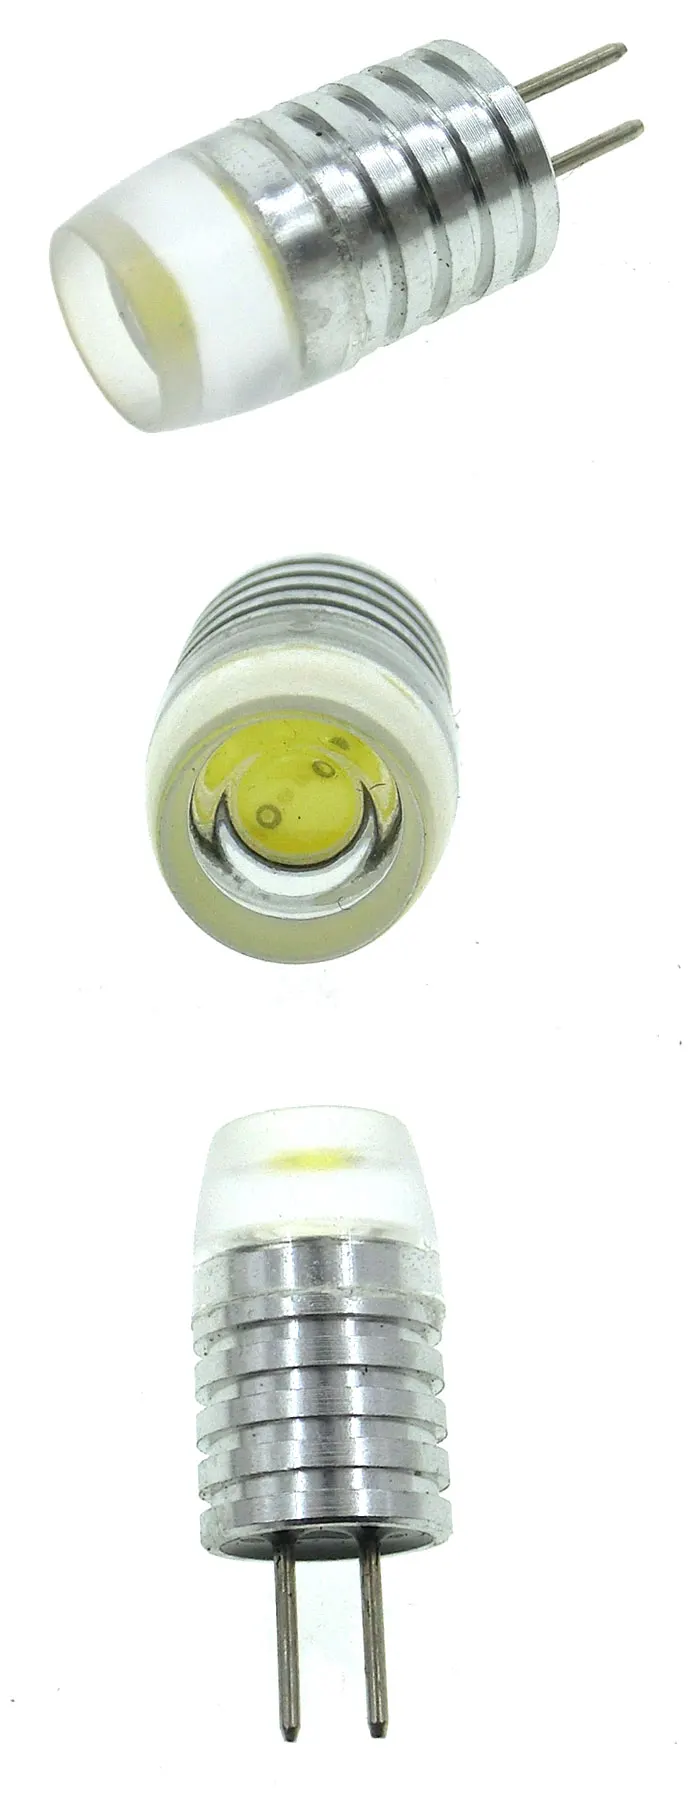 Waterproof-G4-LED-Light-Bulb-1W-Mini-Size